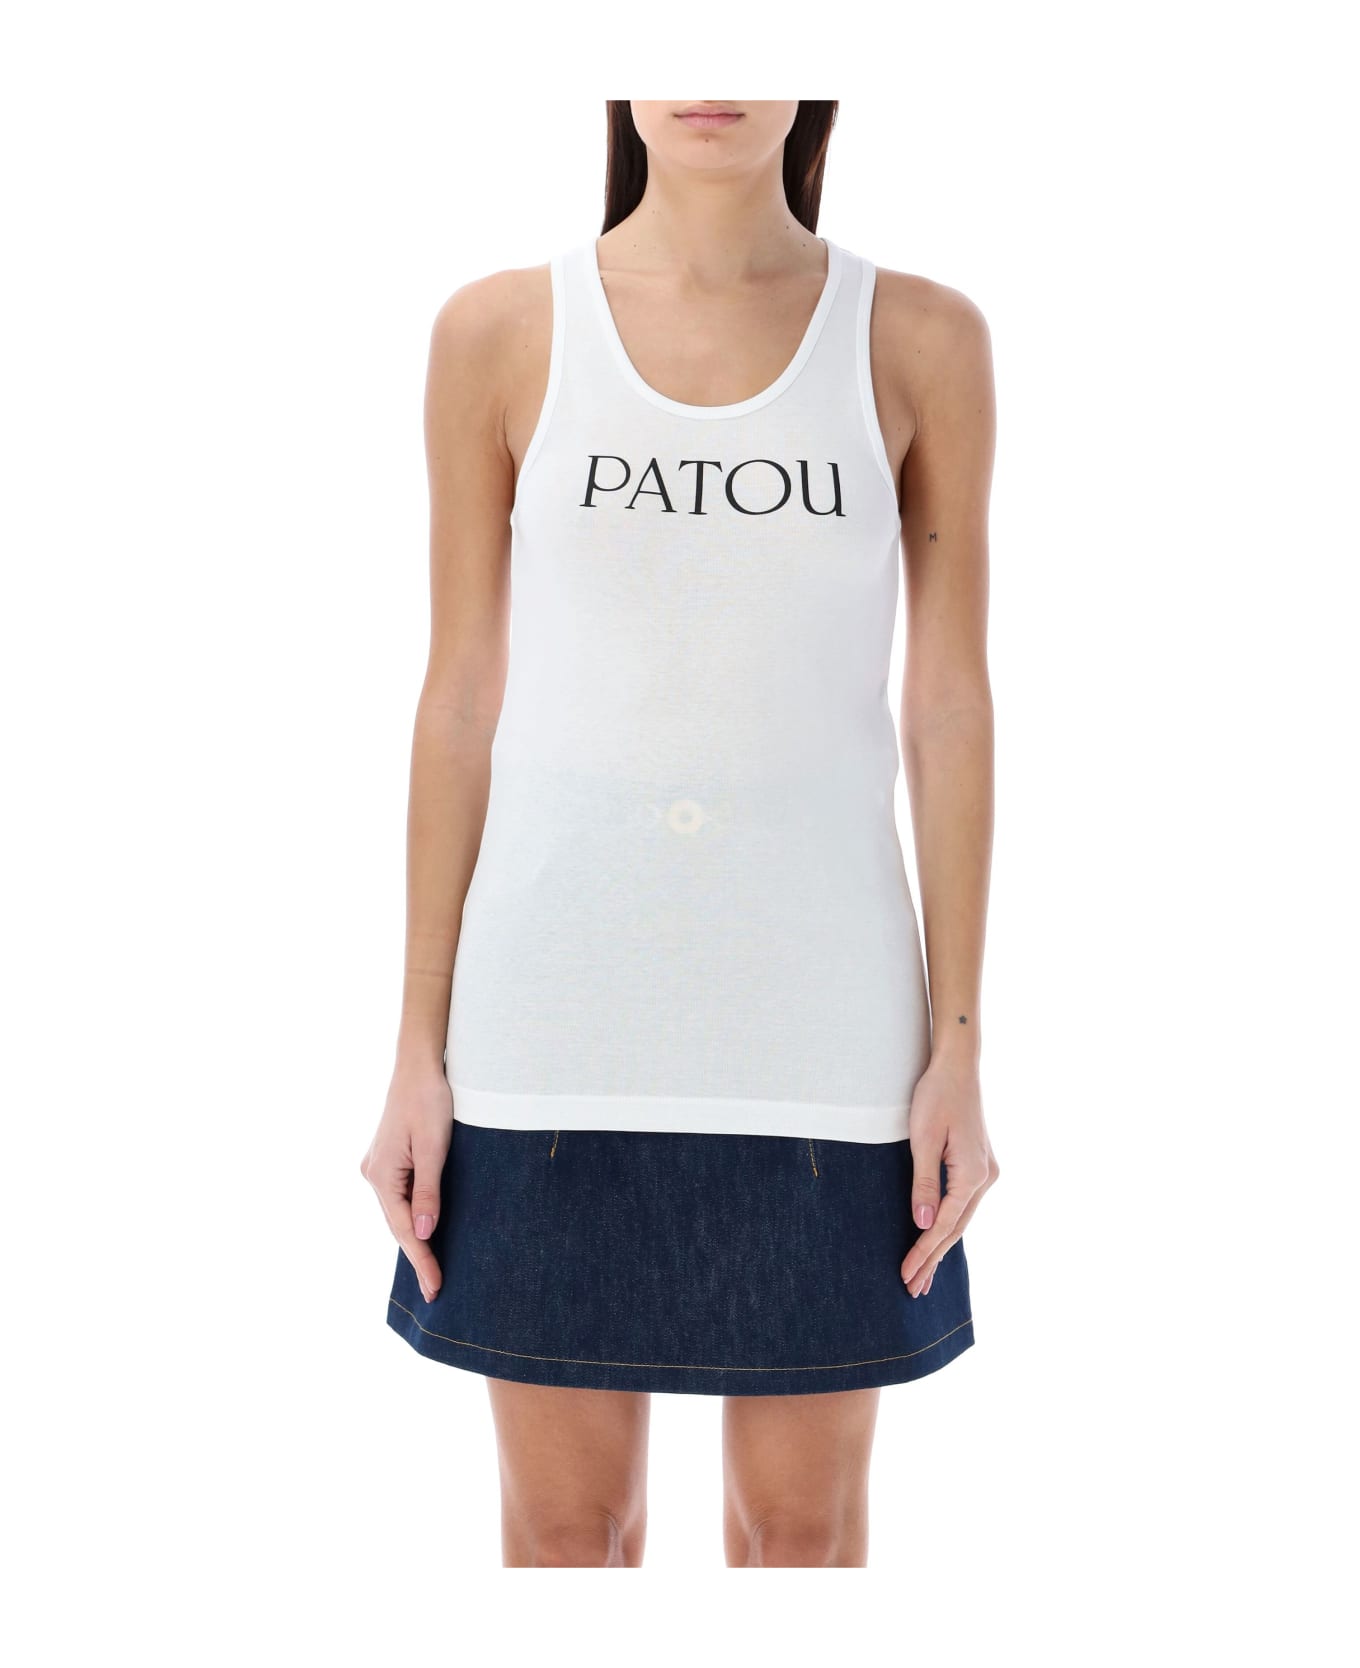 Patou Logo Tank Top - WHITE